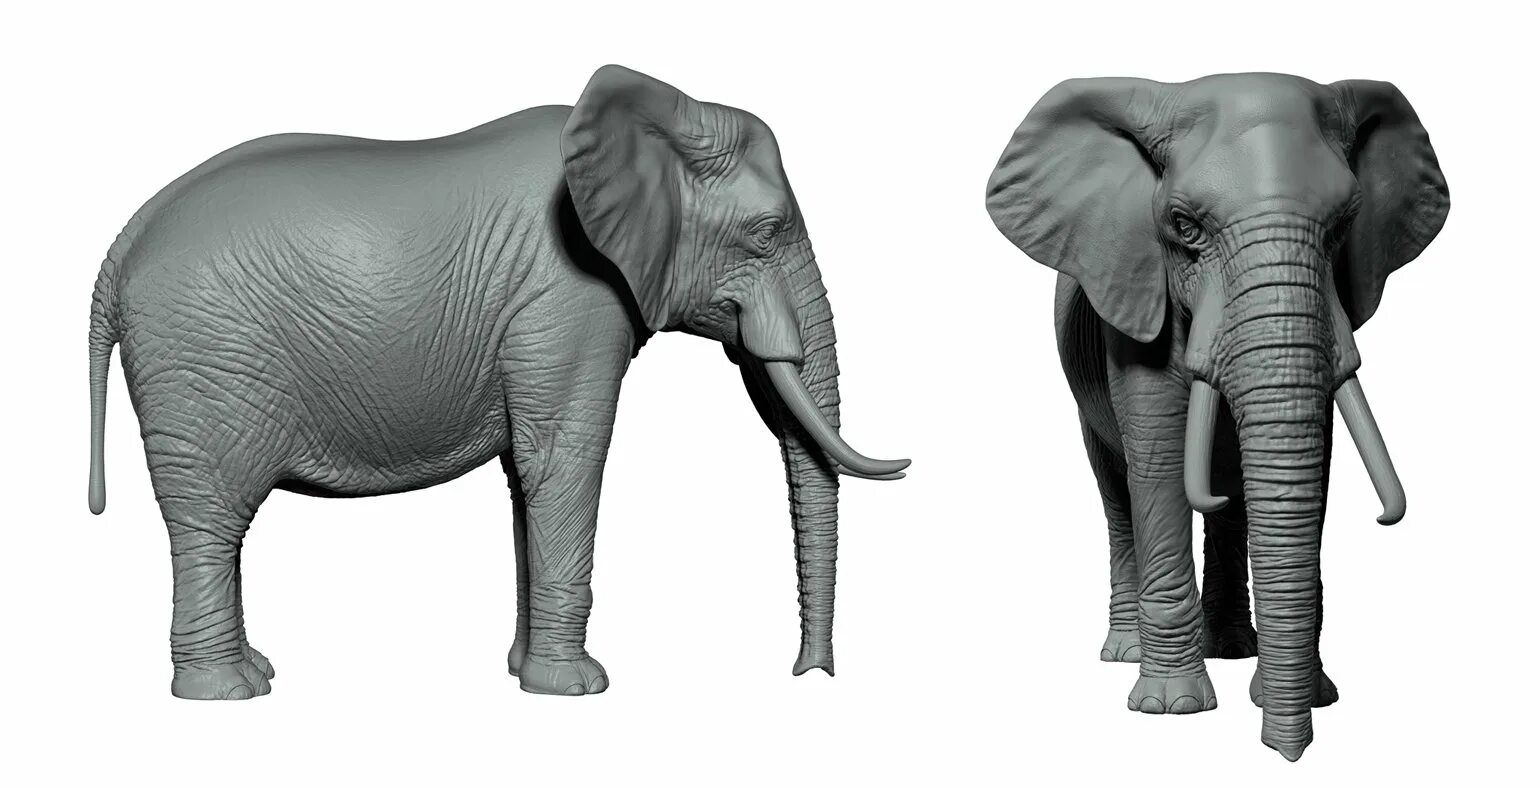 Стоящий слоник. Индийский слон вид сбоку. Африканский слон вид сбоку. Слон с поднятым хоботом вид сбоку. Слон на белом фоне сбоку.